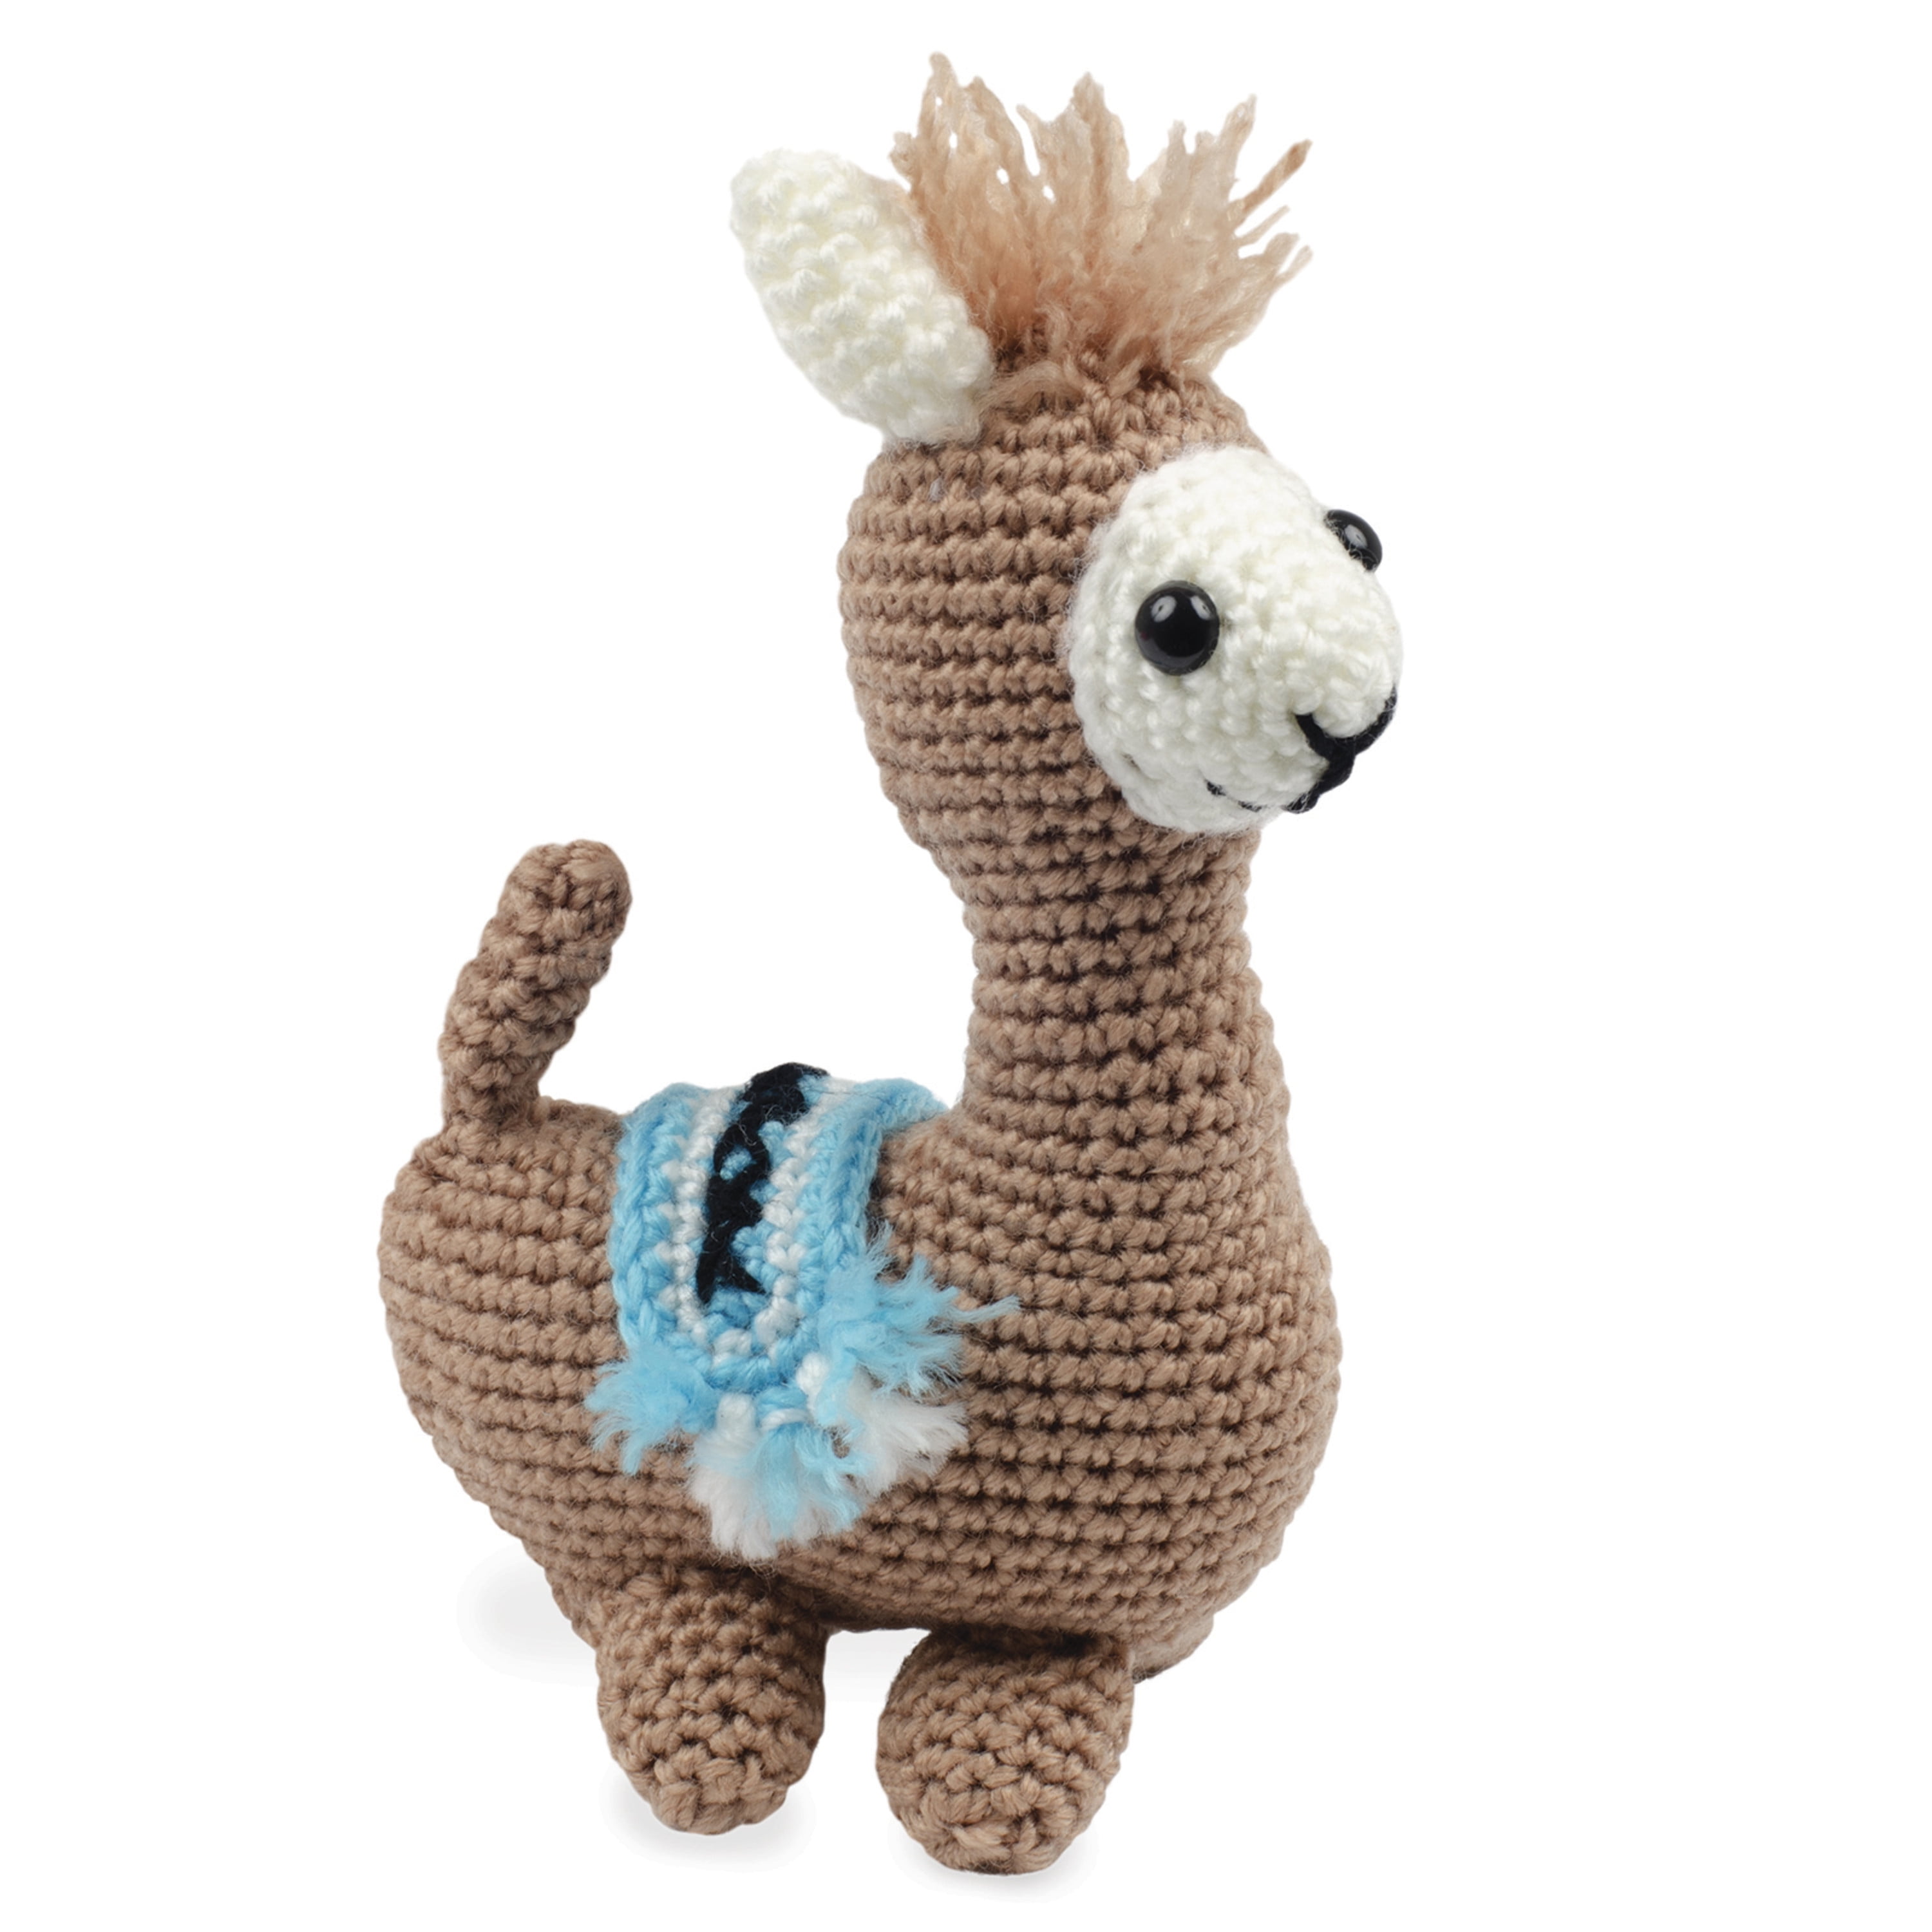 Llama Crochet Kit, Hobby Lobby